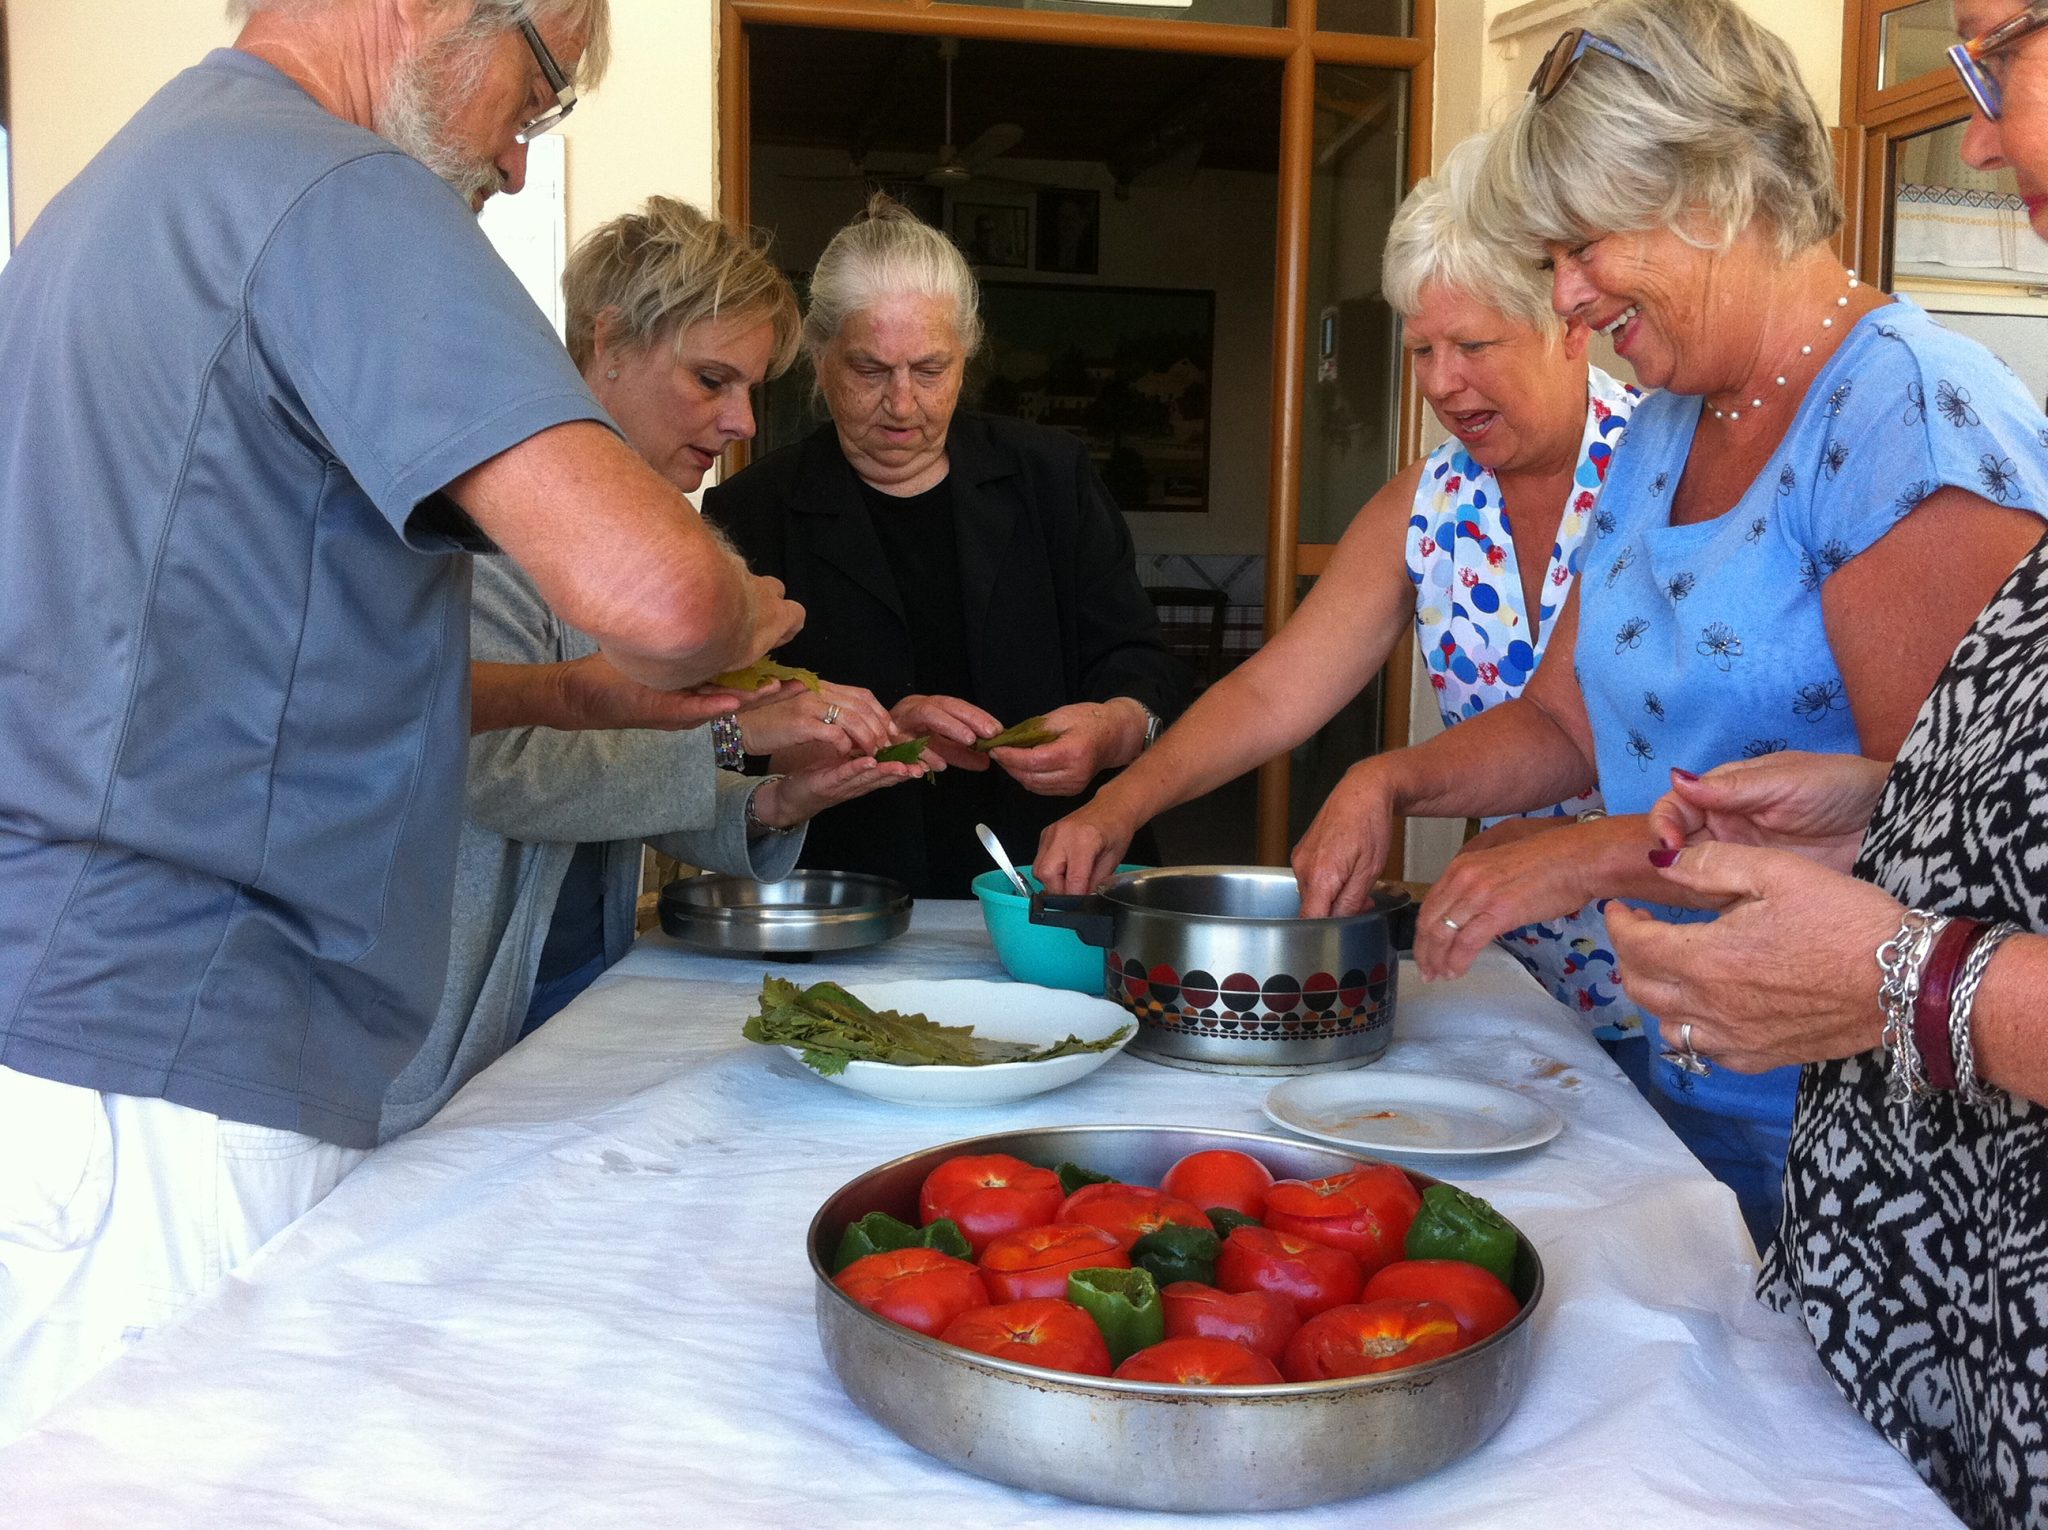 μαθήματα μαγειρικής για κρητικά παραδοσιακά φαγητά και διατροφή - Amari Rethymnon Crete